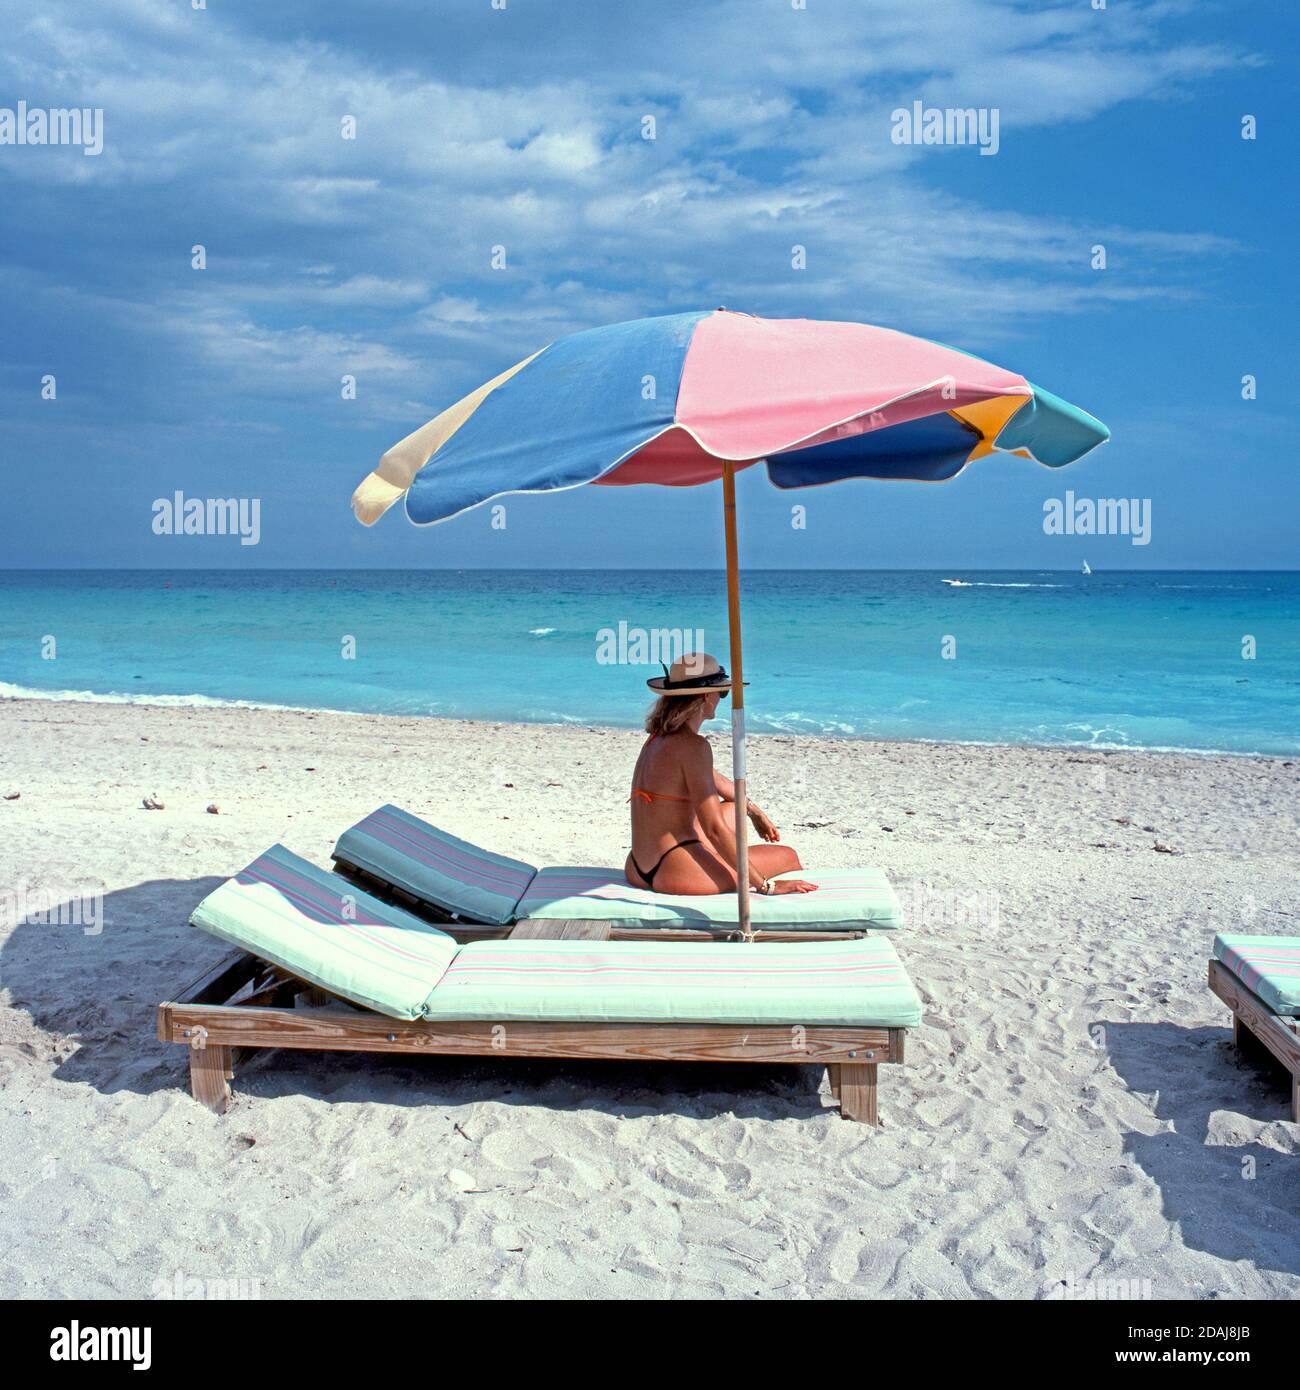 Woman sitting on a sun lounger a parasol, Miami Beach, Miami, Florida, Miami, Florida, USA Stock Photo Alamy